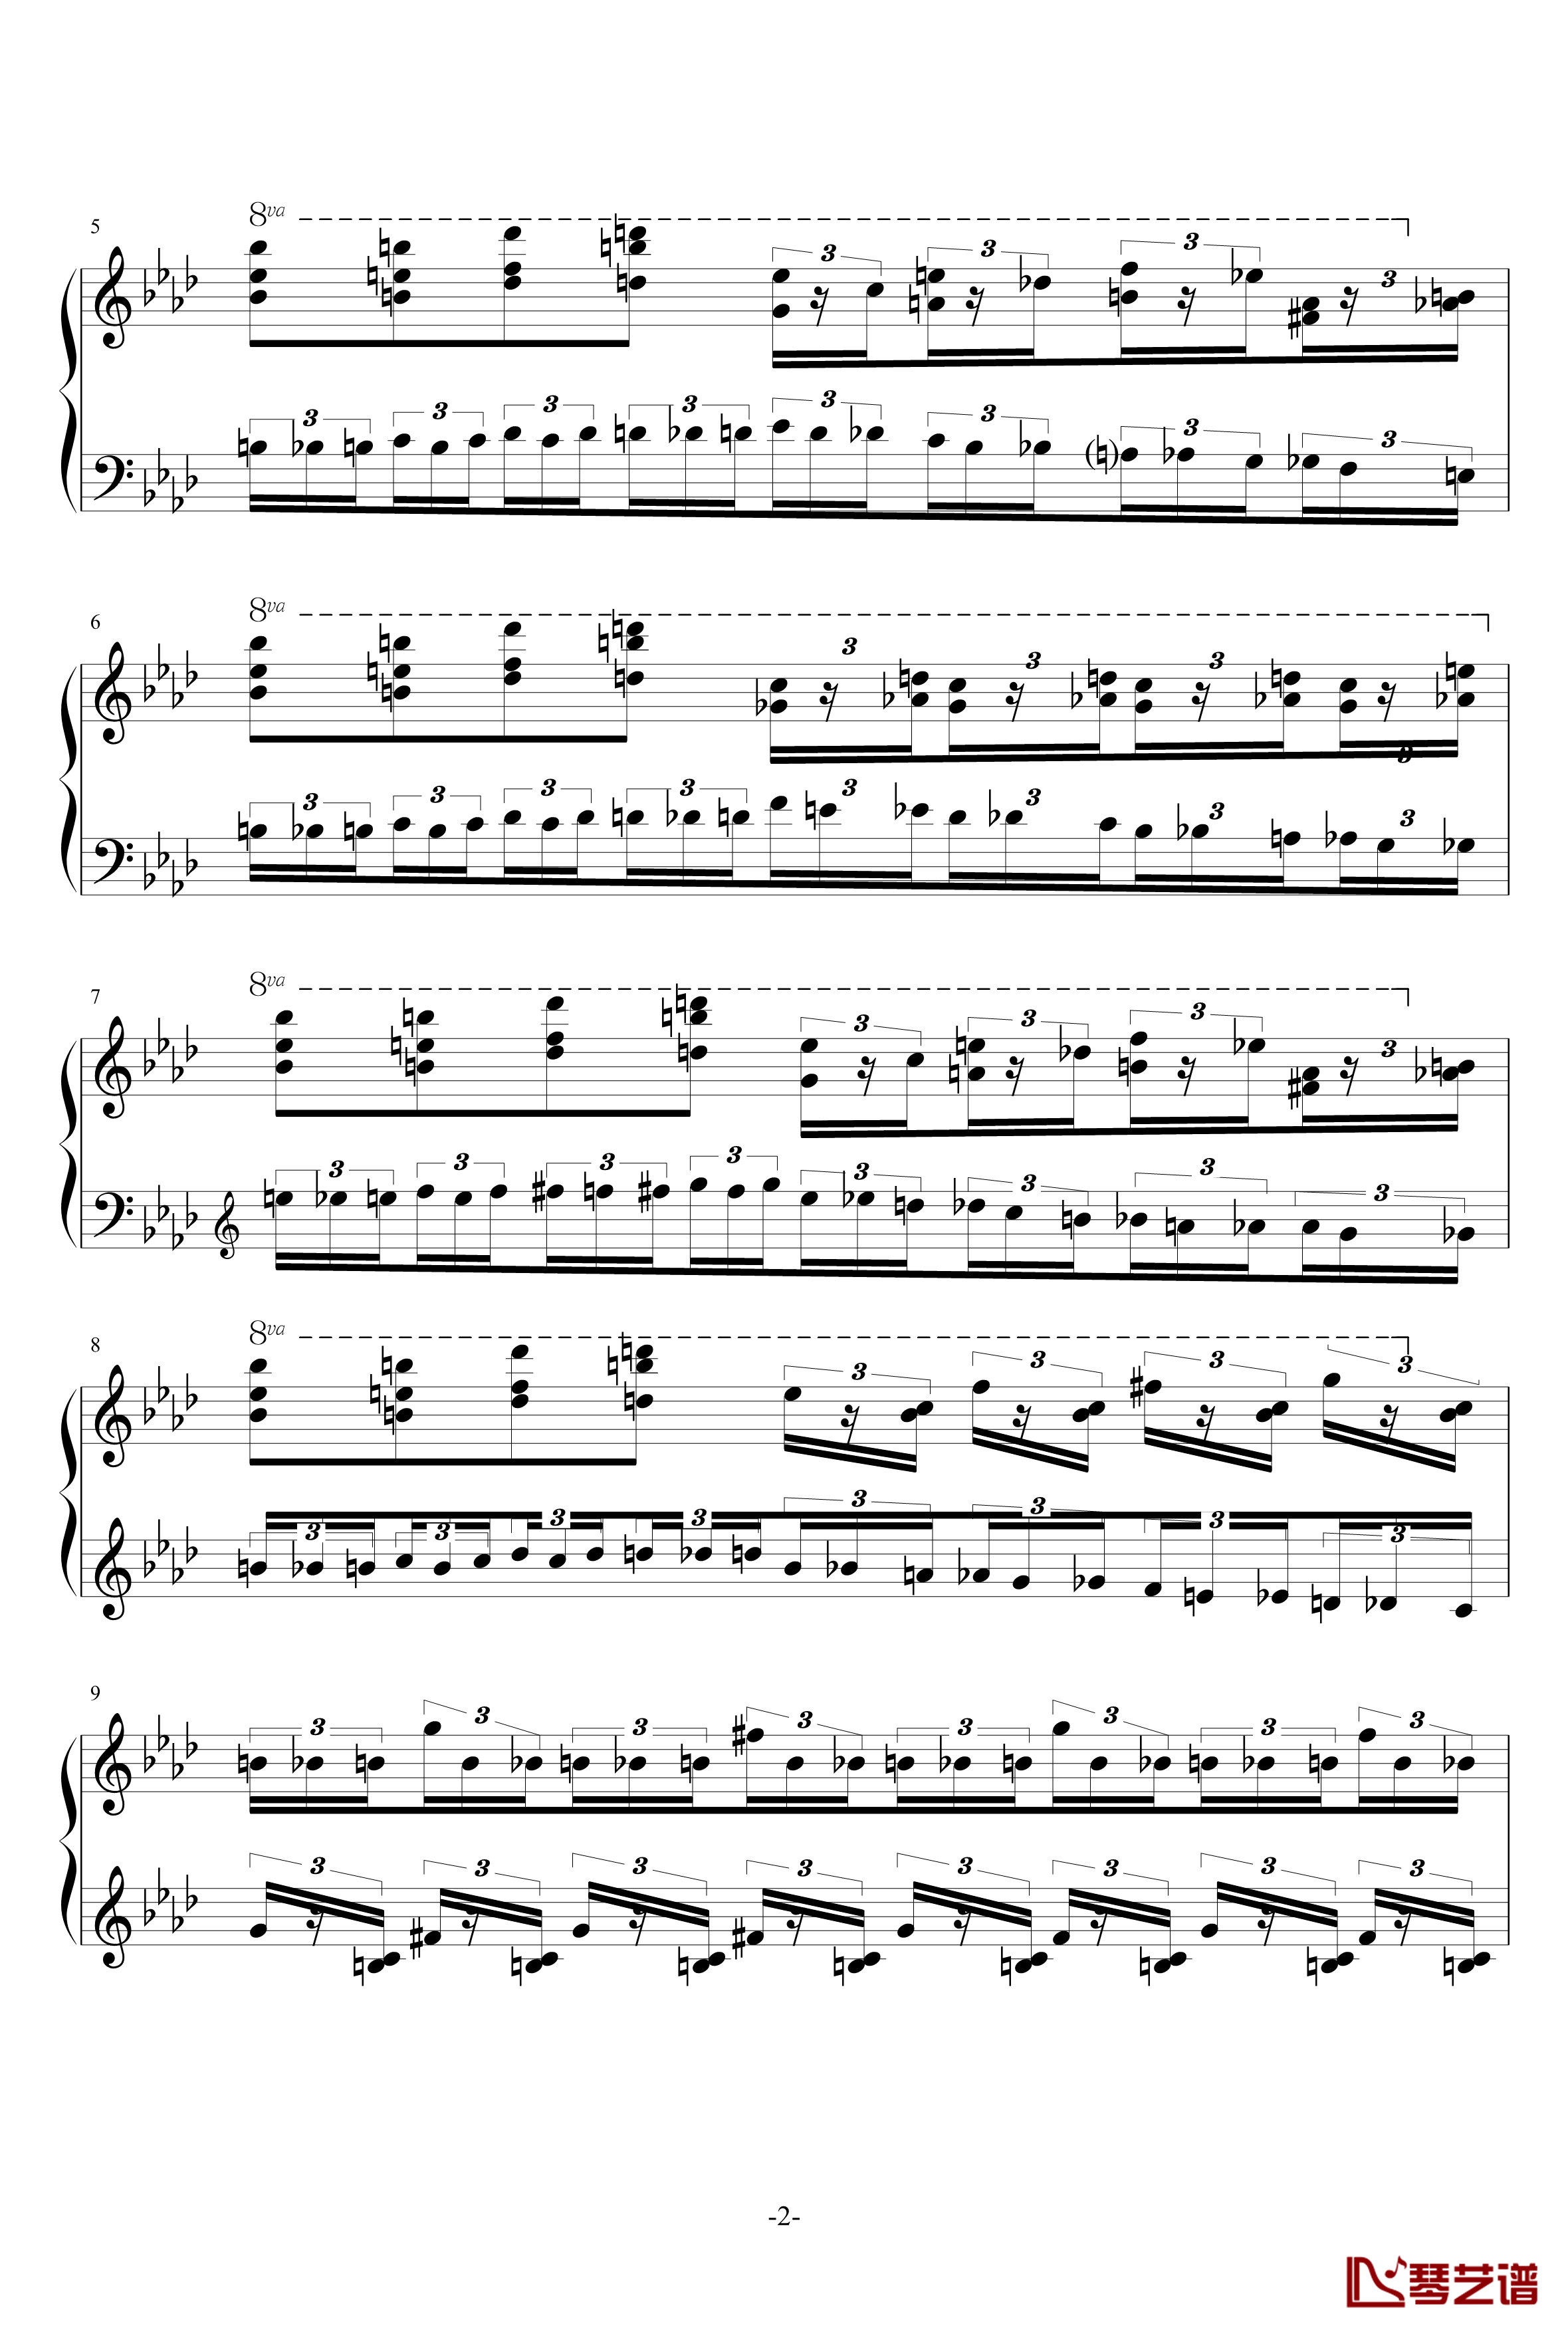 半音阶神经病练习曲钢琴谱-FangDong2